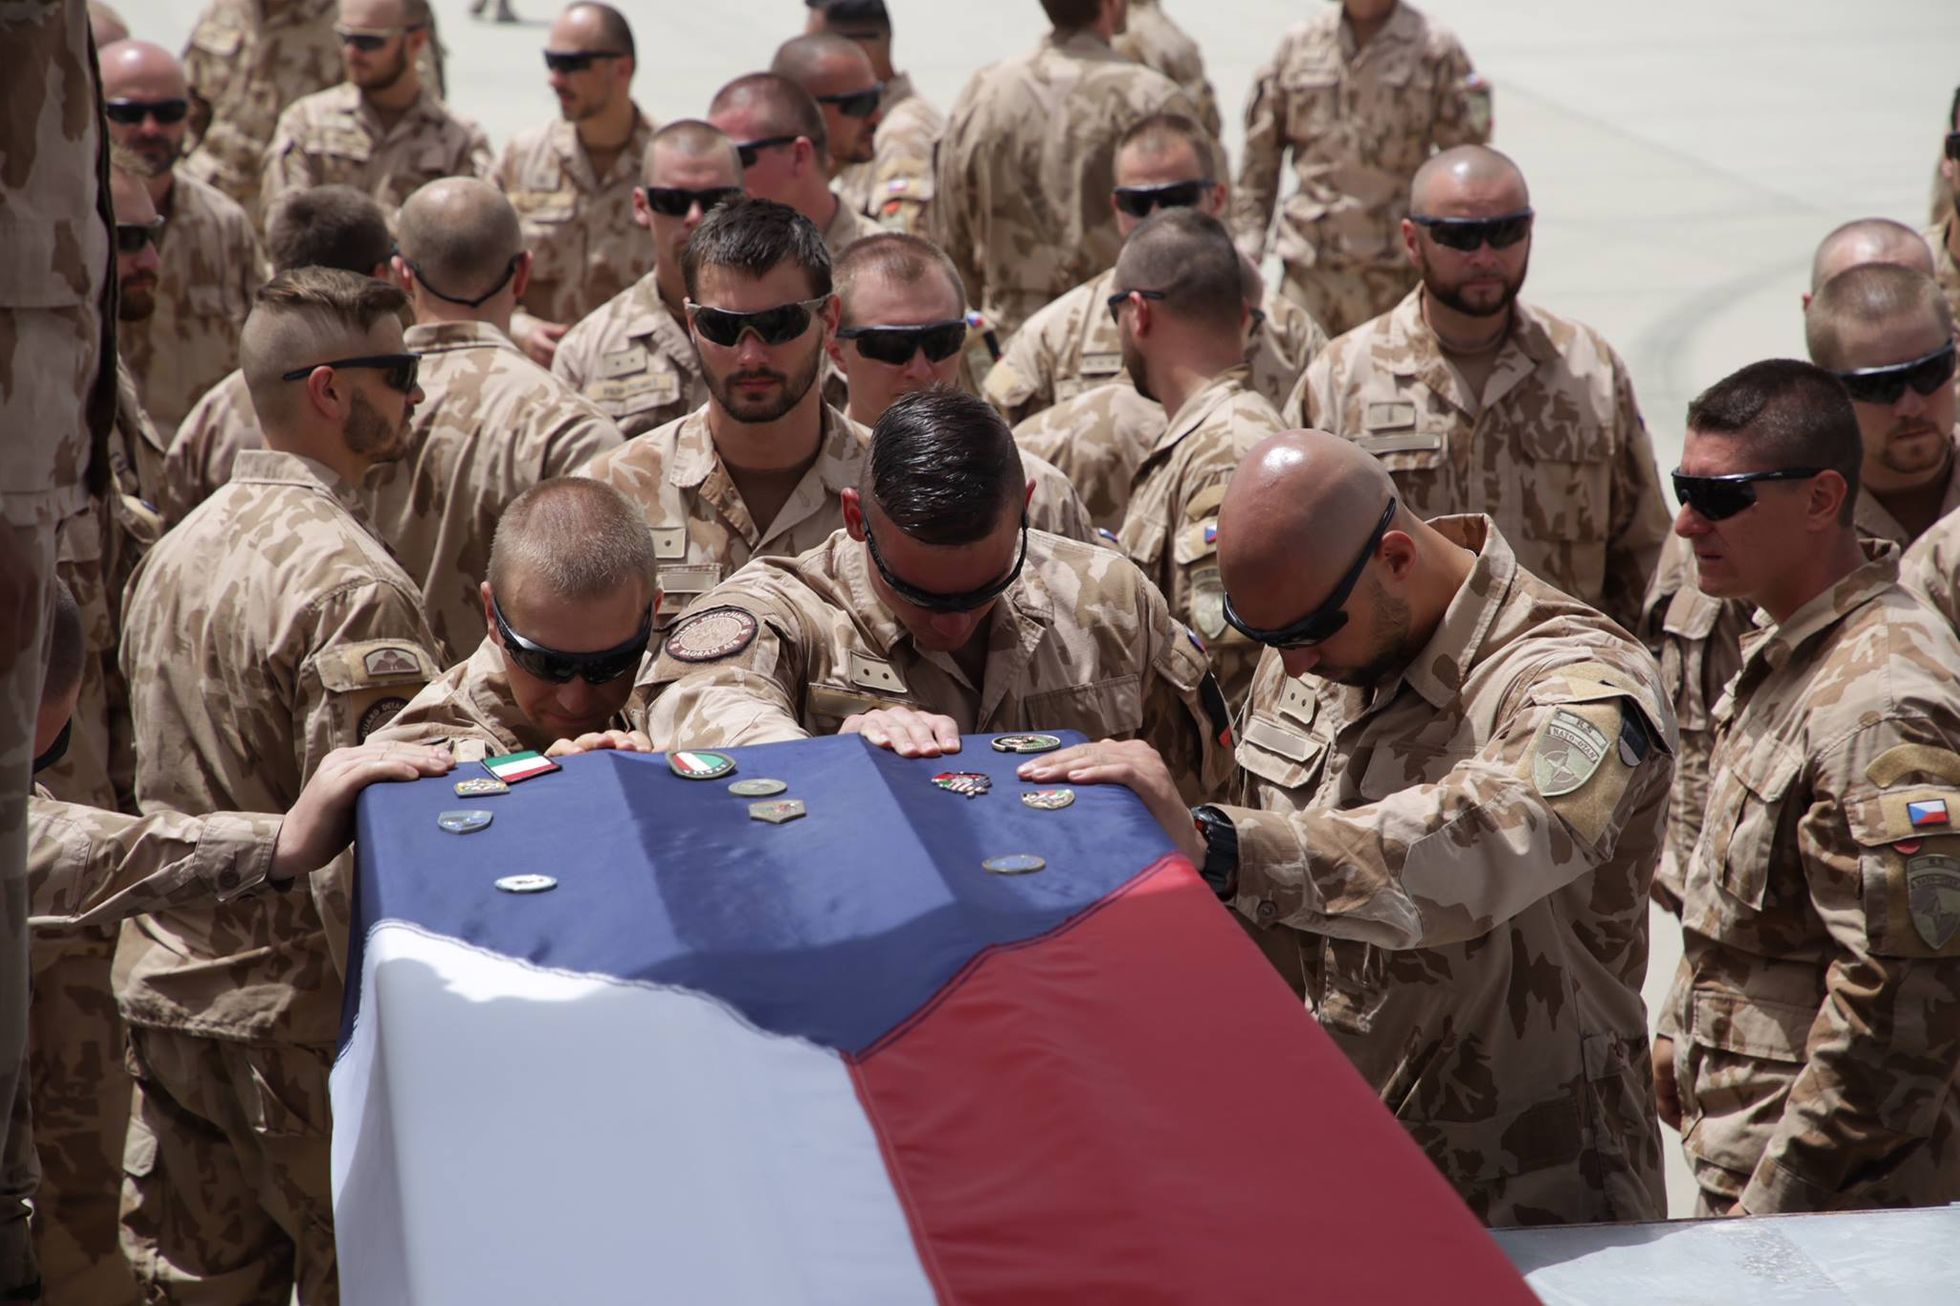 Vojáci u vojenského speciálu, který přepravuje ostatky padlých do Česka